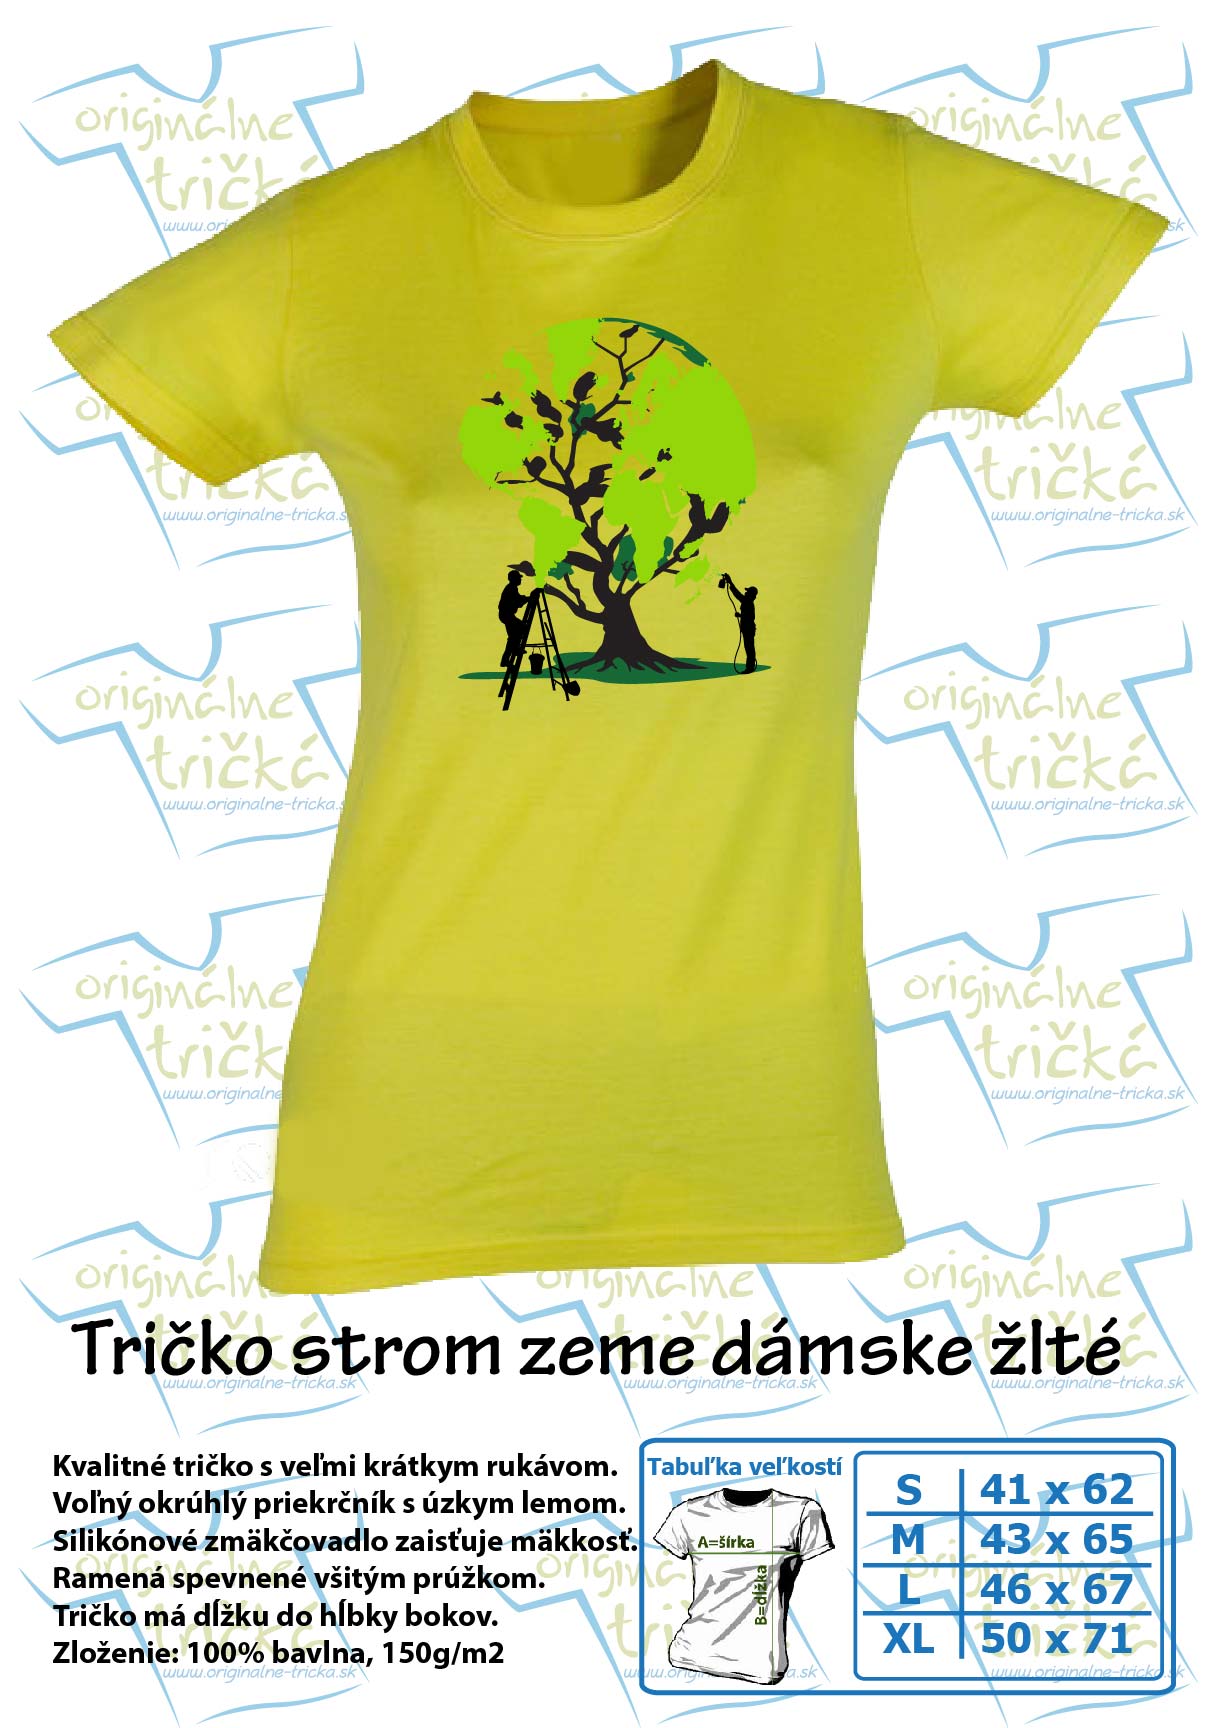 Tričko strom zeme dámske žlté